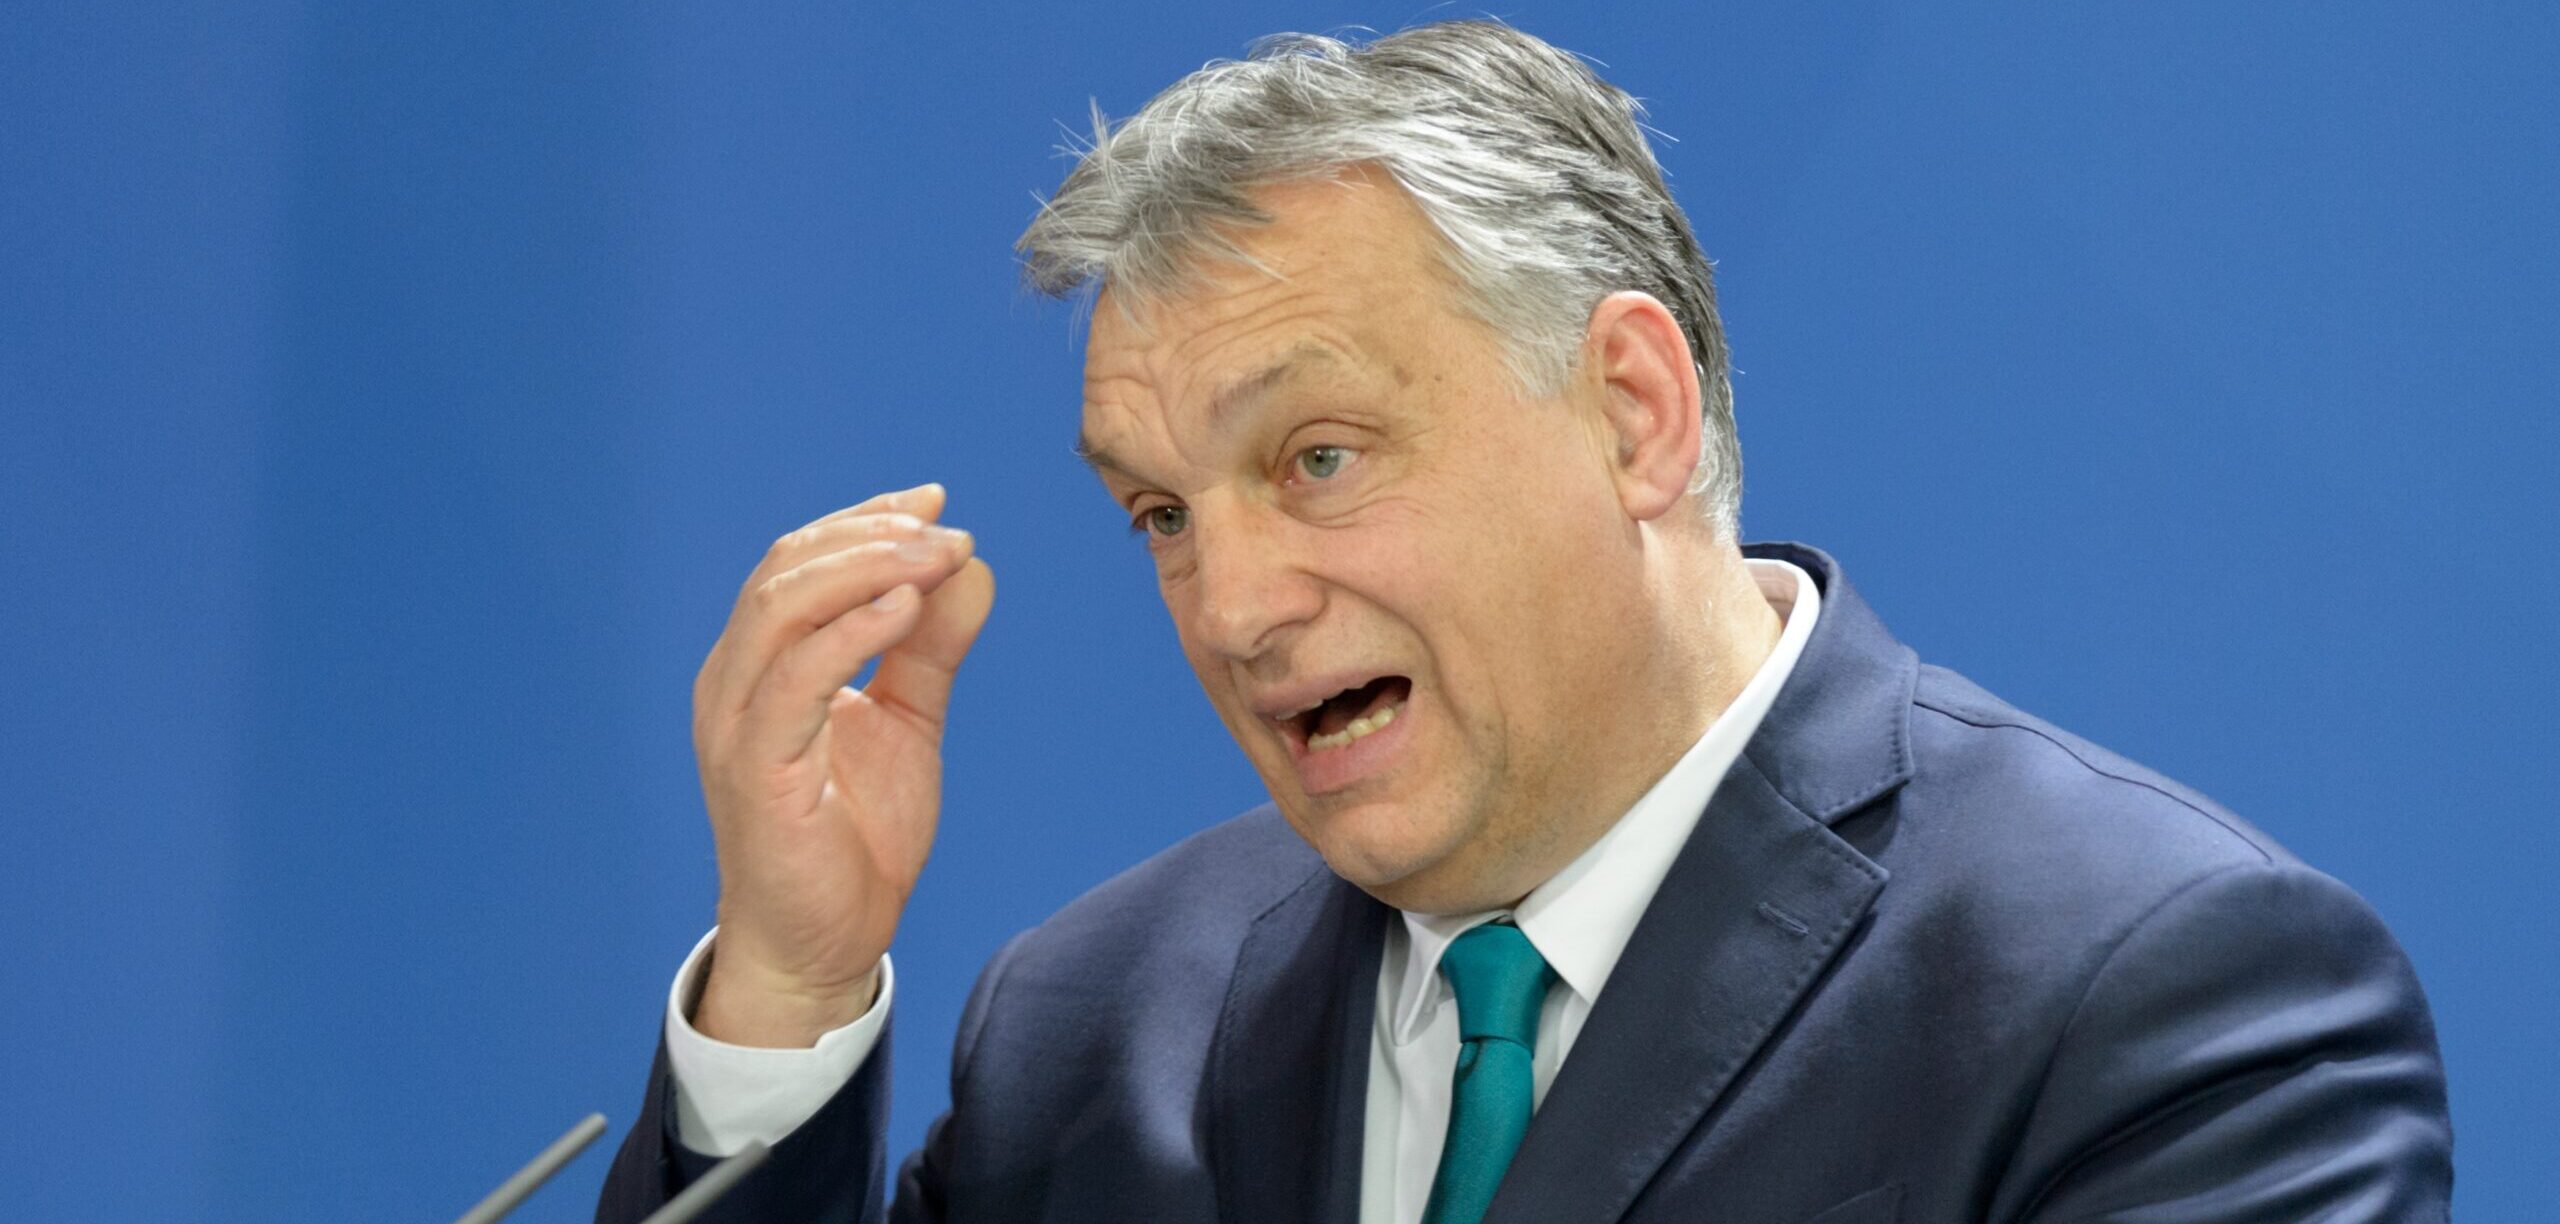 Після саміту 1 лютого: ЄС готує жорсткі заходи проти Угорщини через Україну